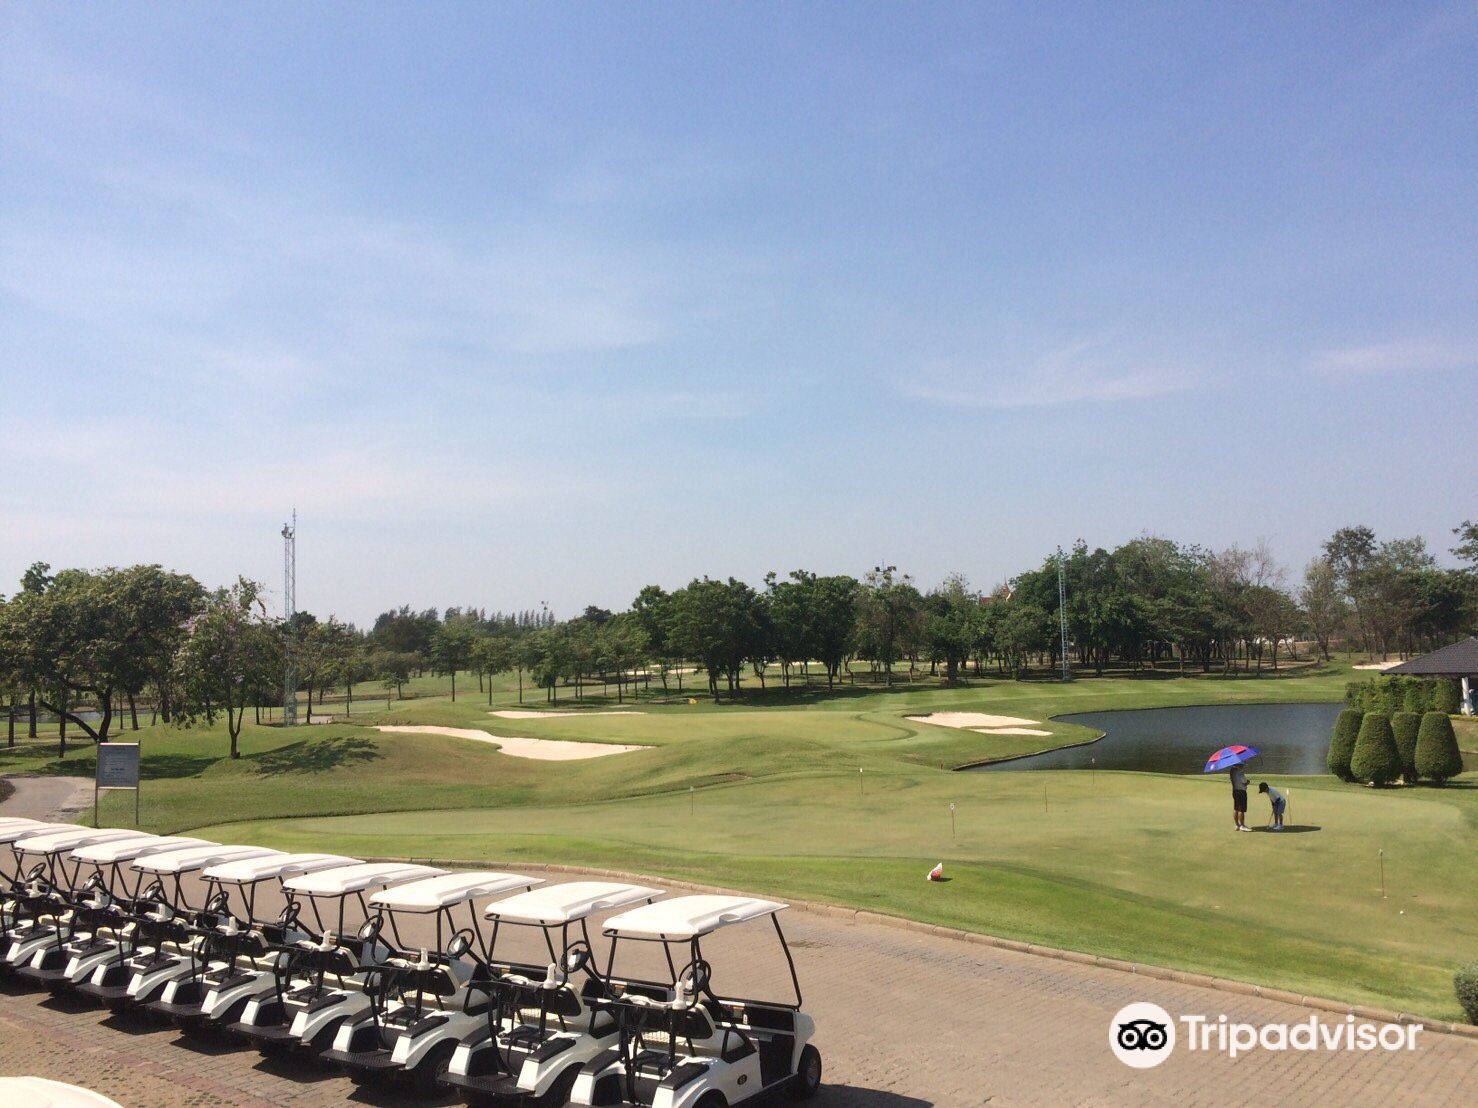 泰国曼谷高尔夫俱乐部 Bangkok Golf Club